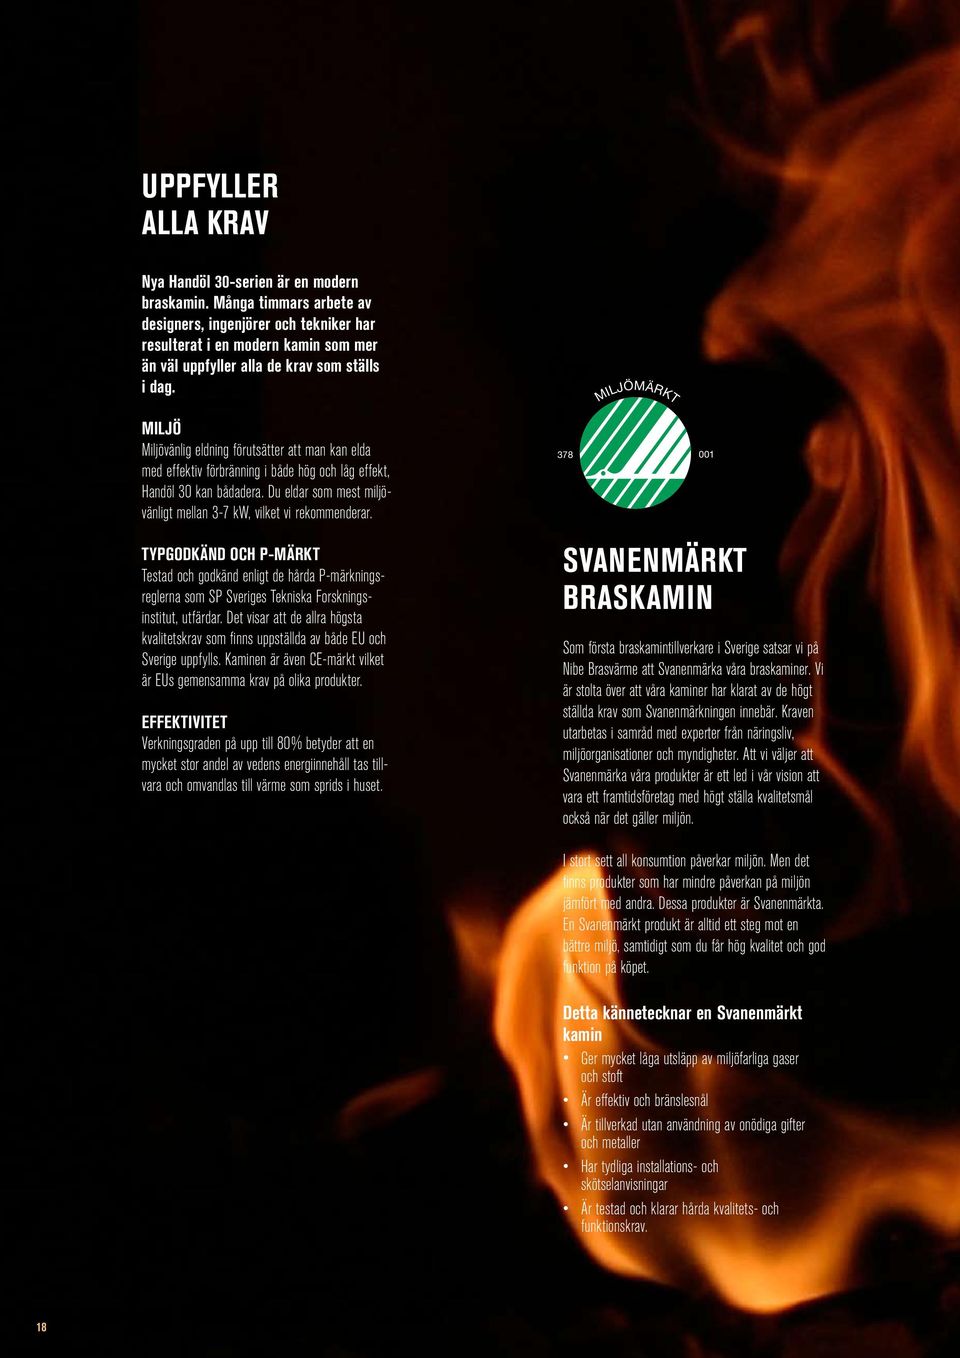 MILJÖ Miljövänlig eldning förutsätter att man kan elda med effektiv förbränning i både hög och låg effekt, Handöl 30 kan bådadera.